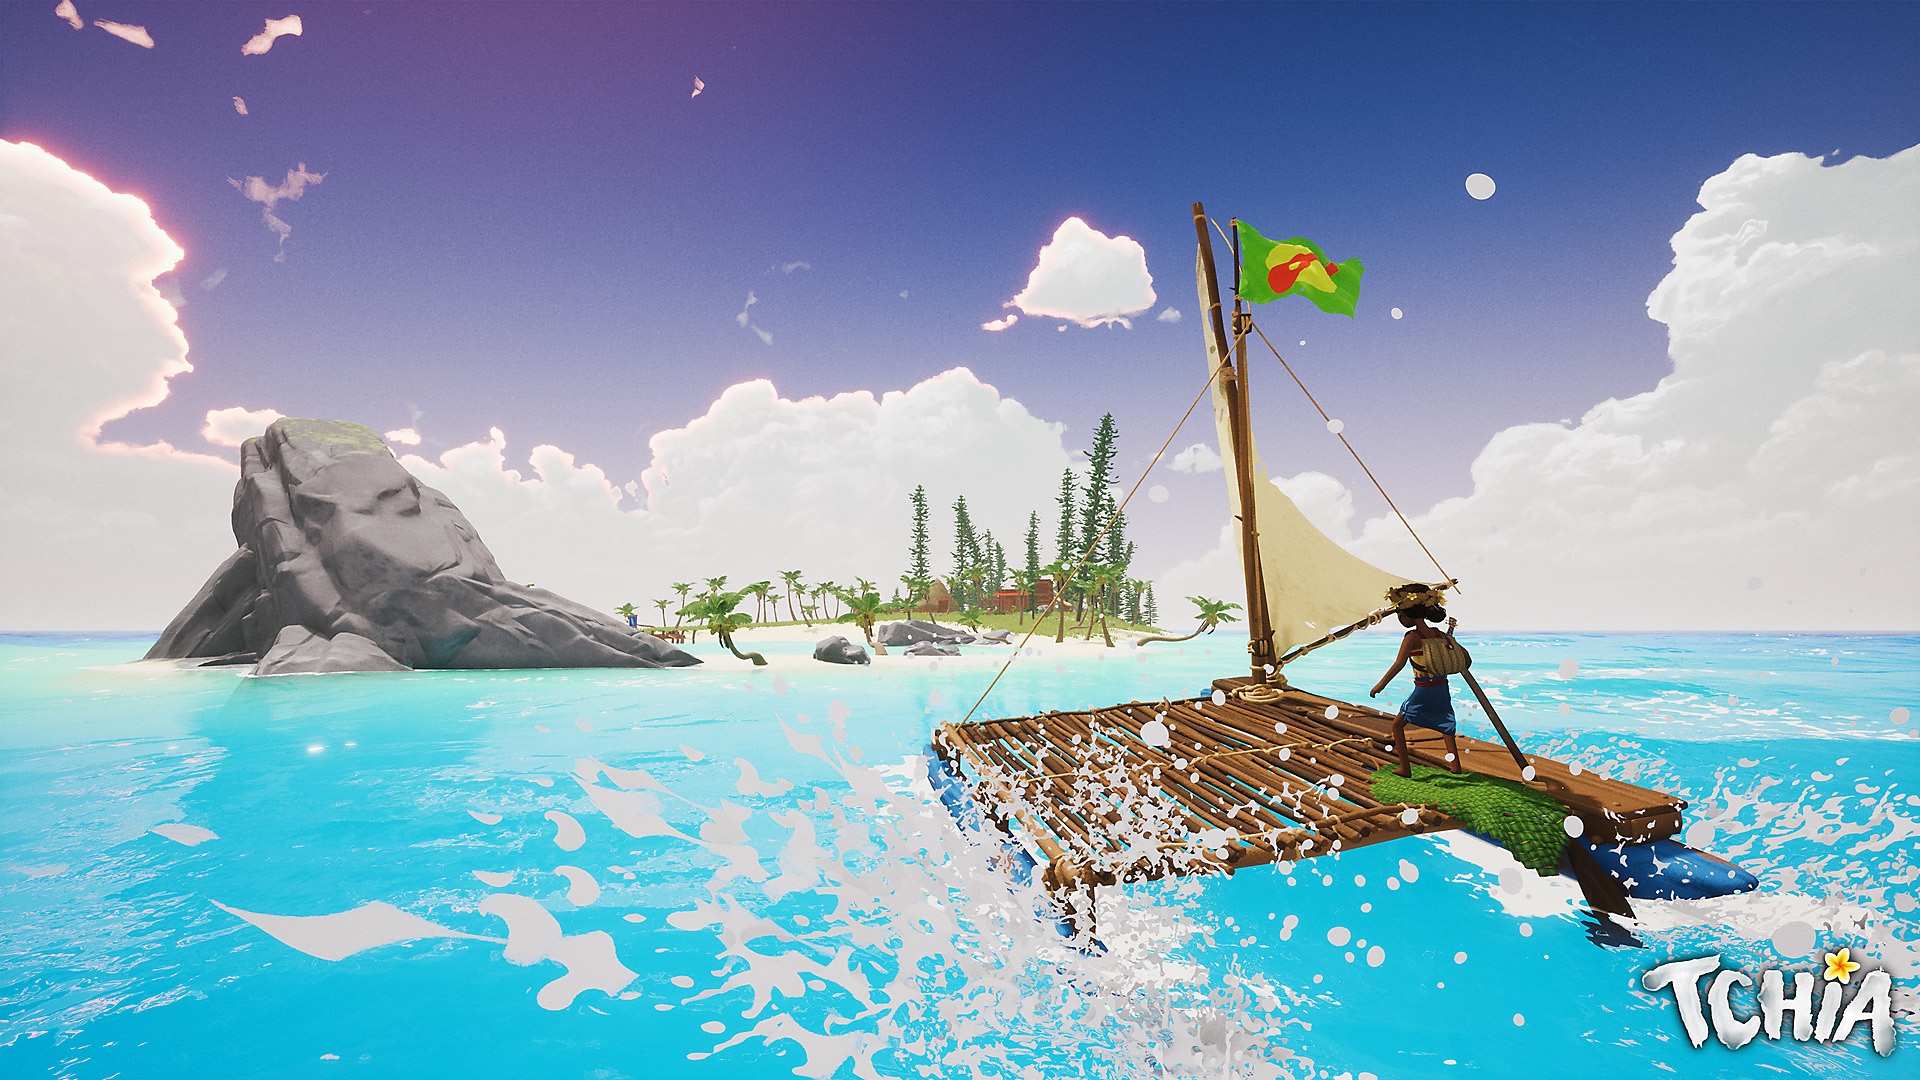 Screenshot von Tchia, der die Protagonistin zeigt, wie sie auf einem Floß in Richtung einer Insel fährt